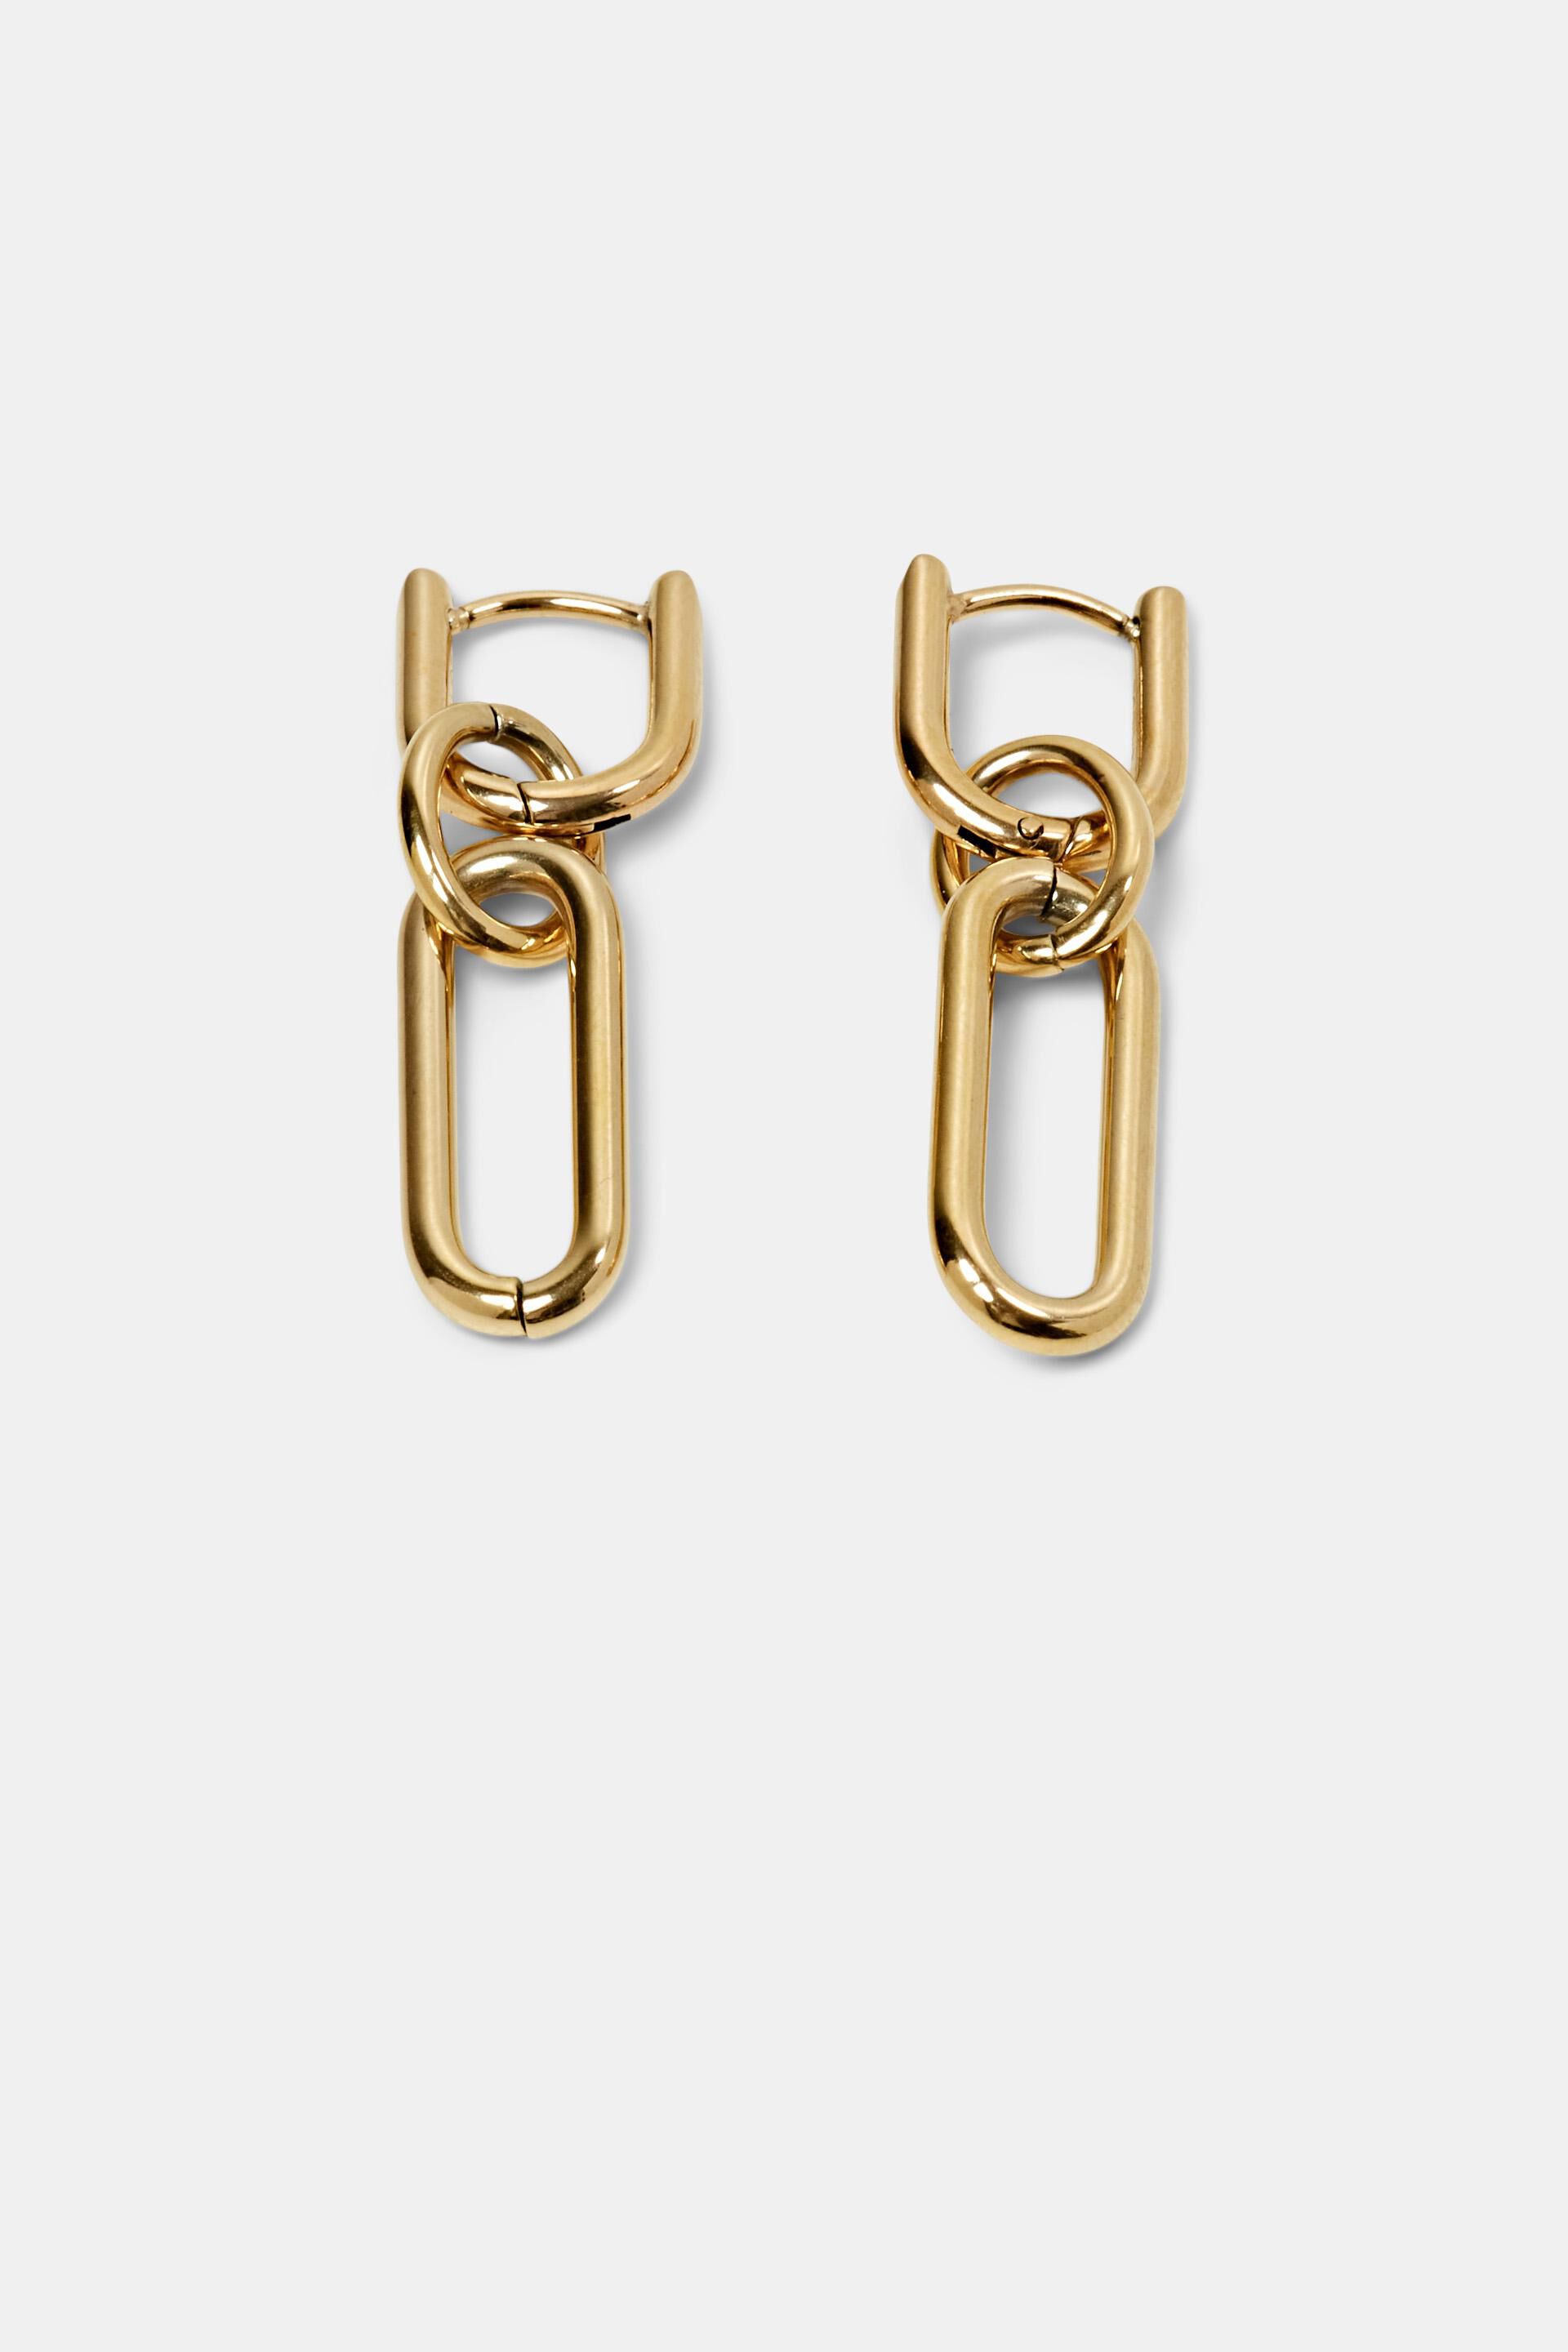 Esprit earrings, steel Link stainless